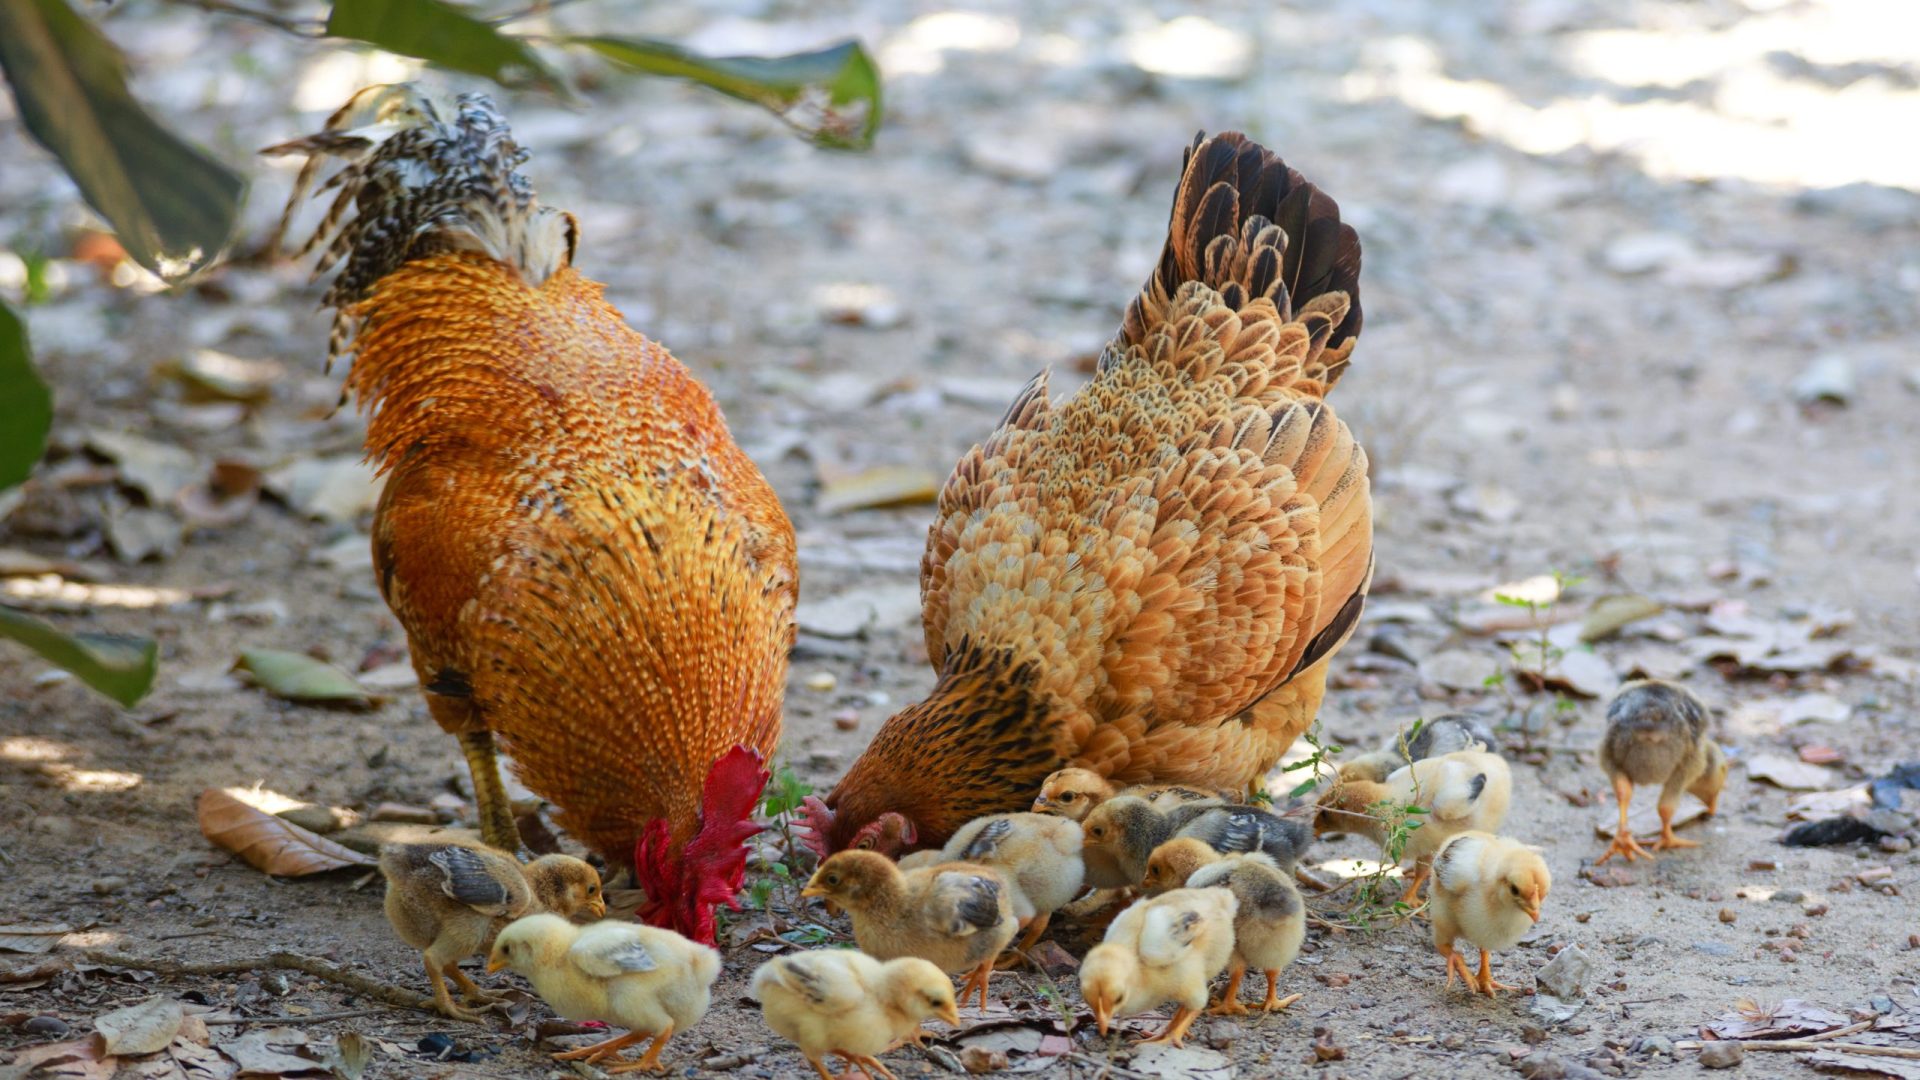 Galinhas e codornas Amazonas é seguido pelos estados de Tocantins, com 2.770.363 galinhas e Rondônia com 30.265 codornas - Foto: Reprodução/Canva